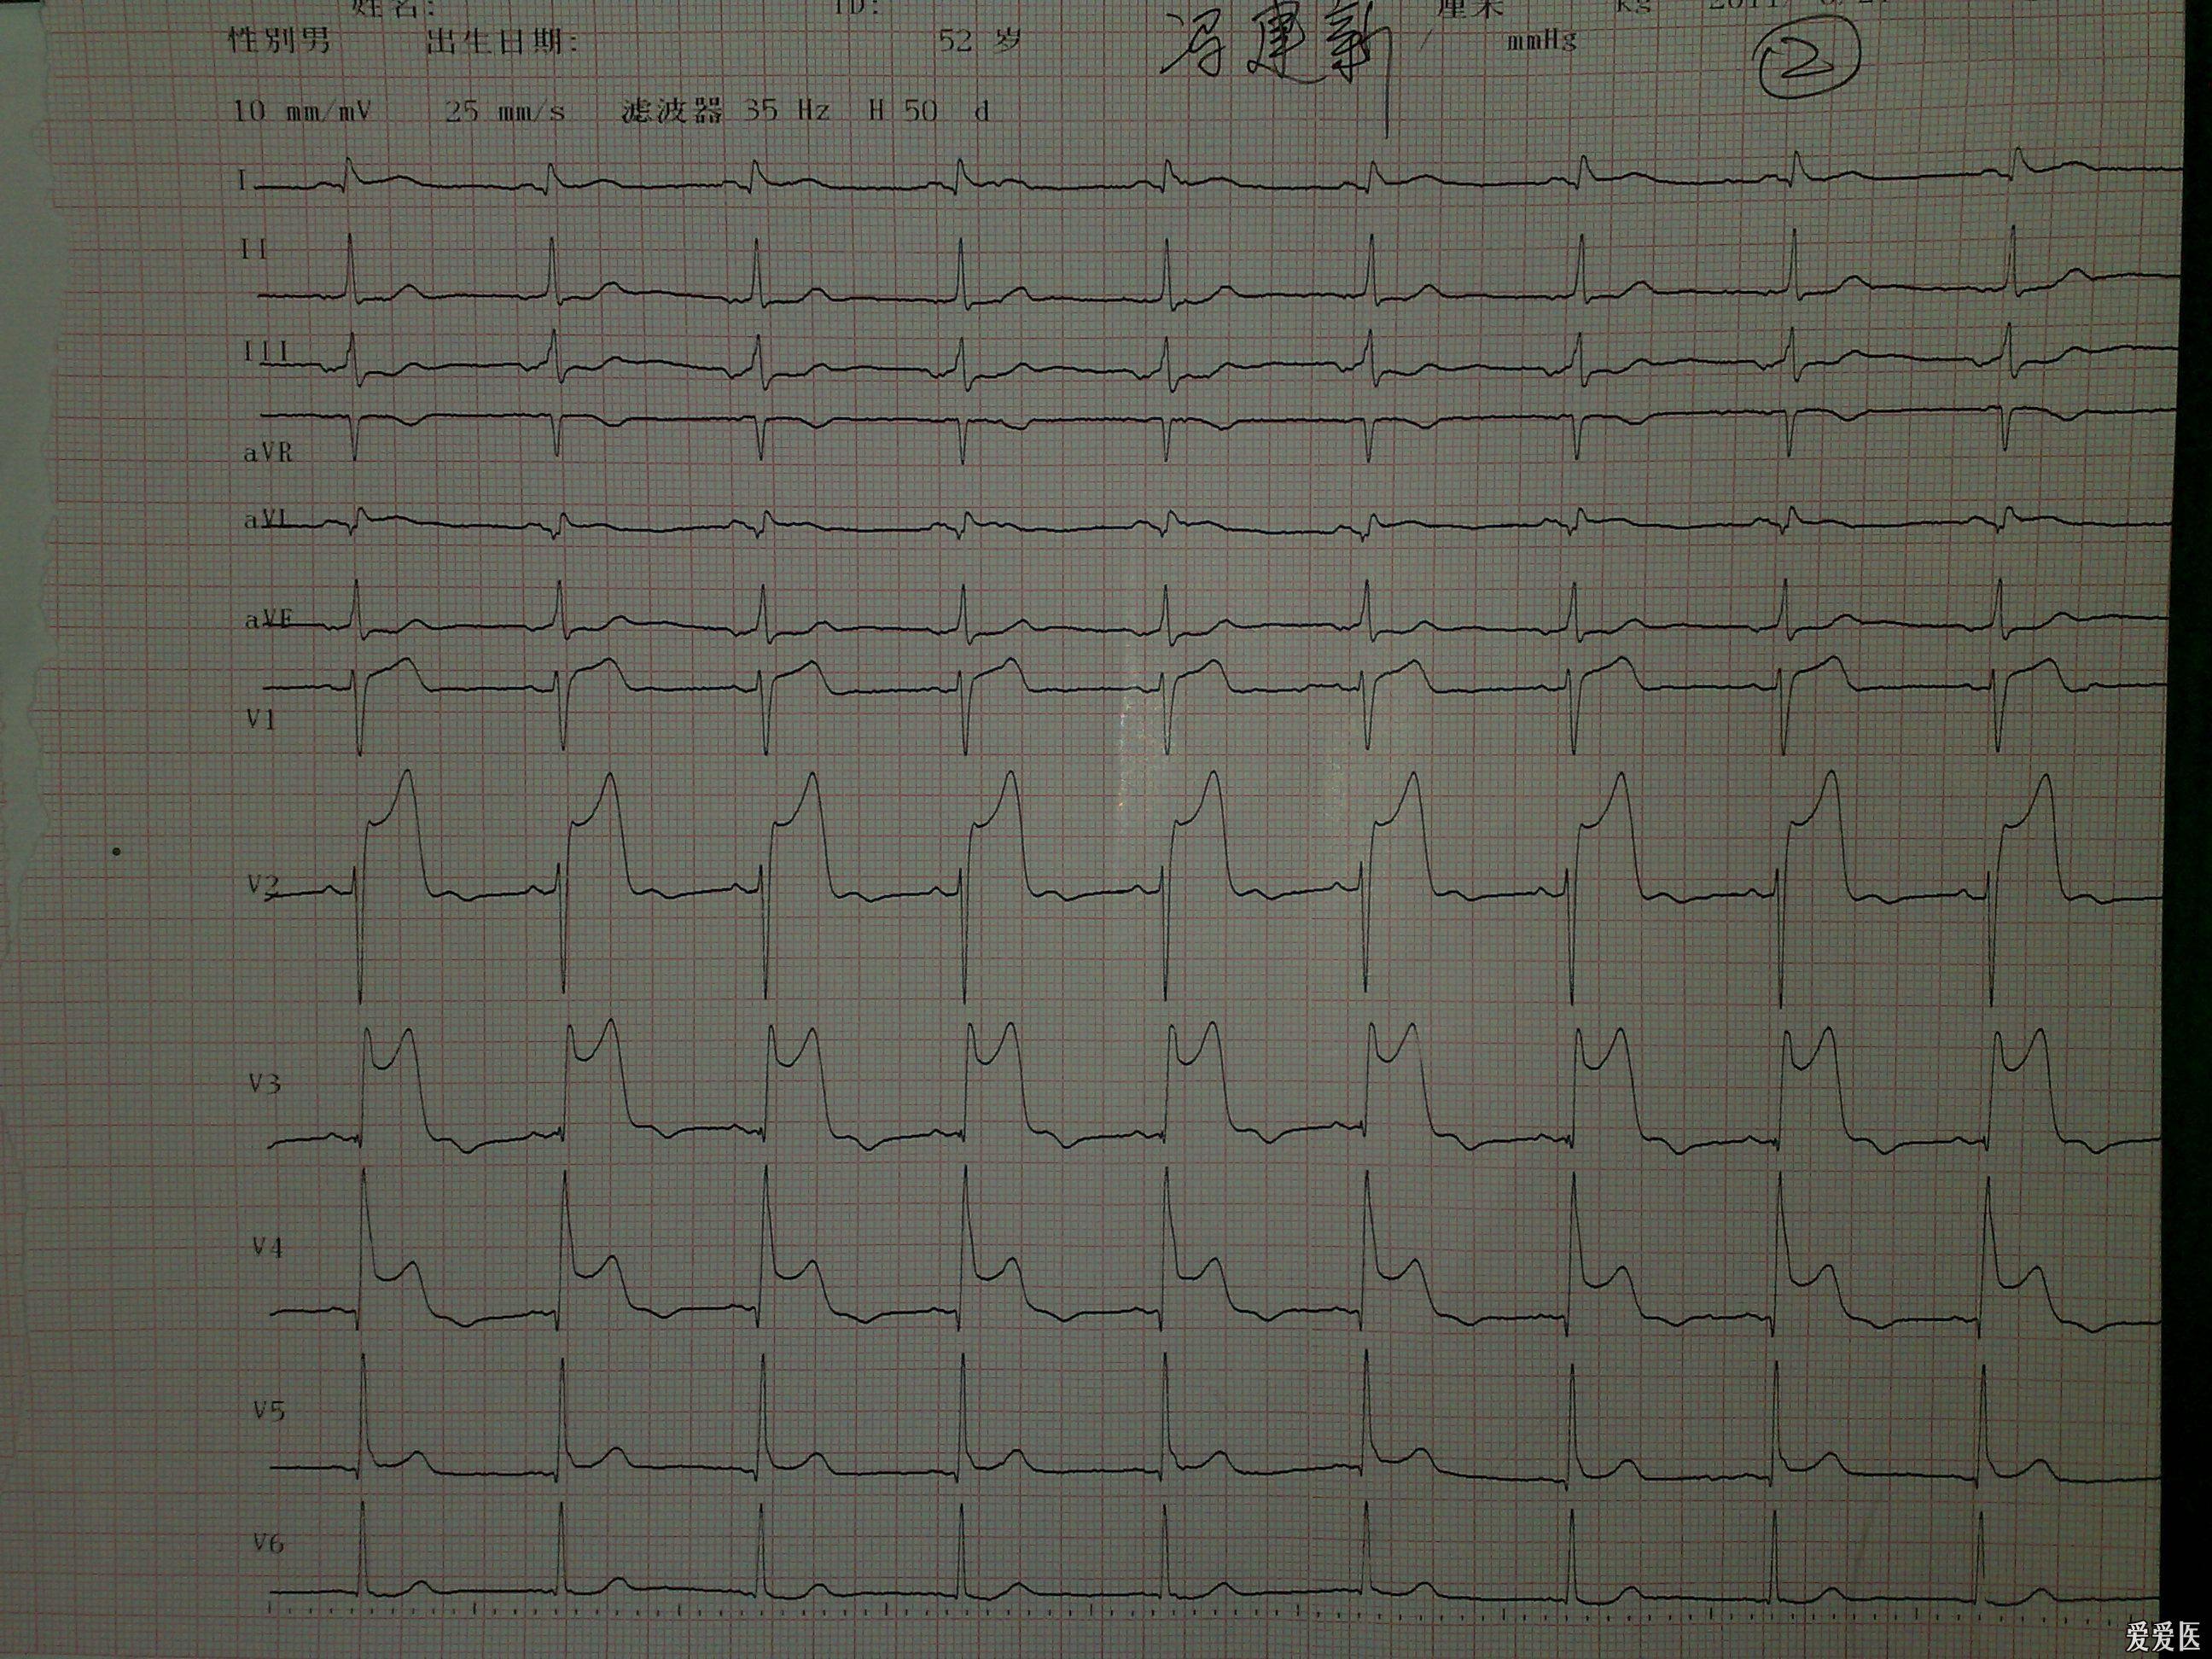 心肌梗塞的心电图片图片